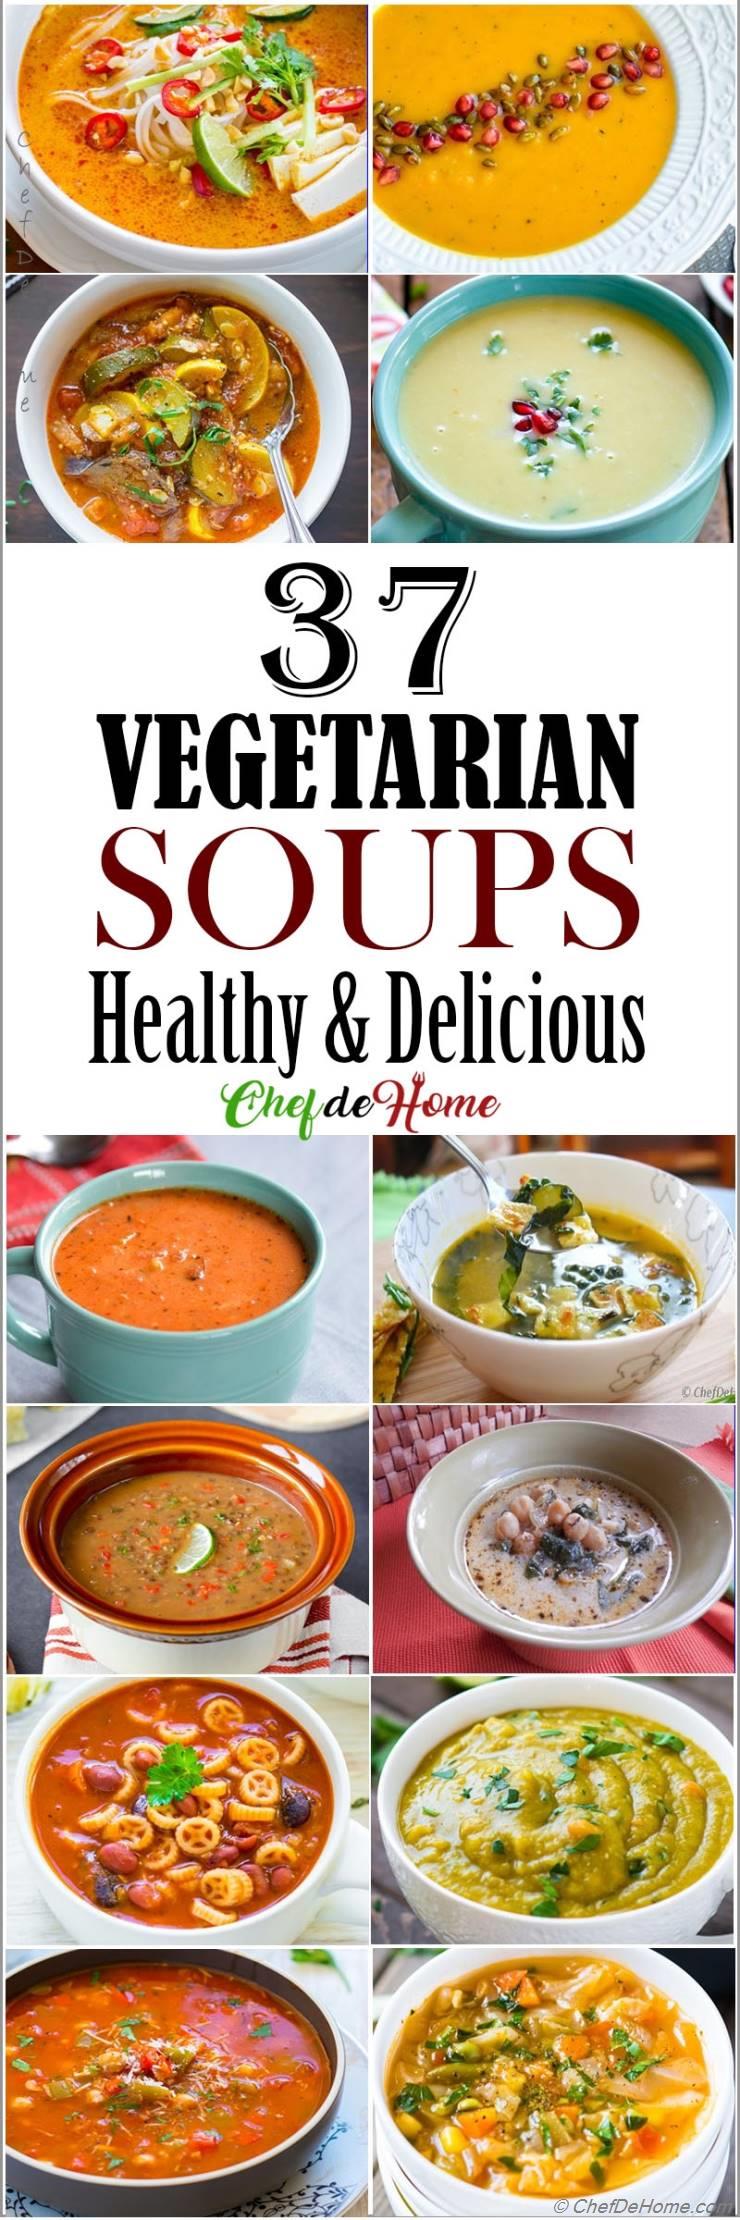 37 Vegetarian Soup Recipes